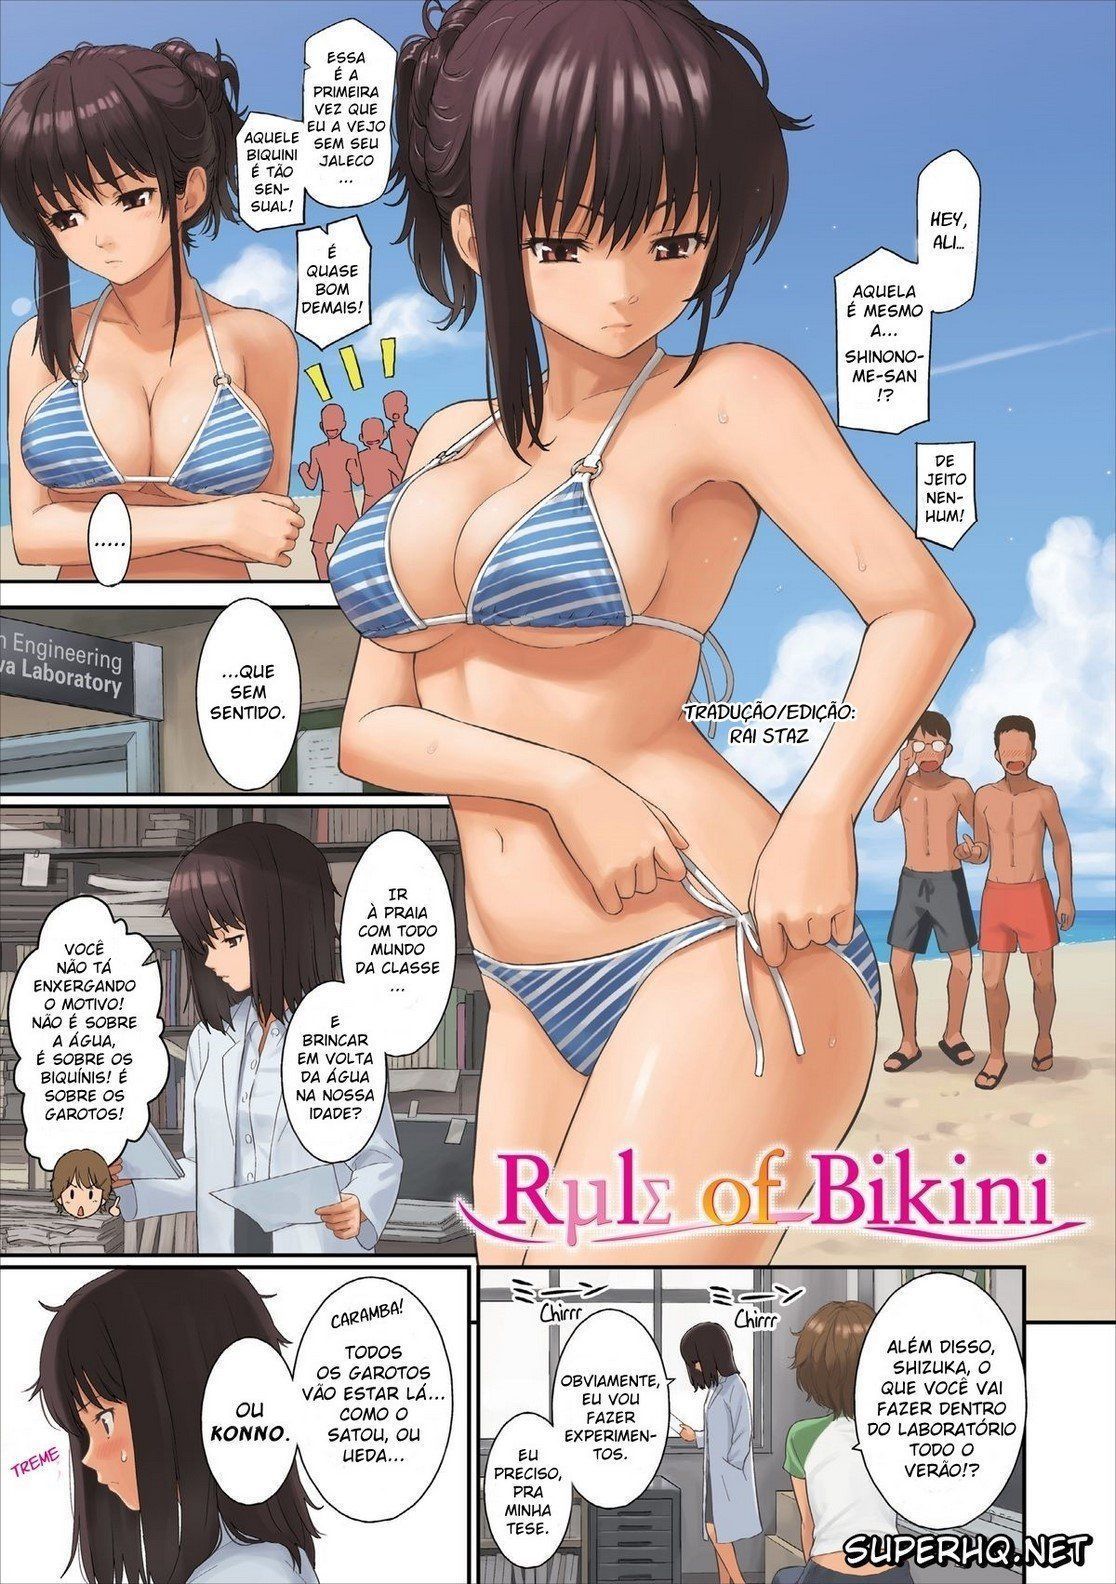 Quadrinho porno - Rule of Bikini - A garota da praia